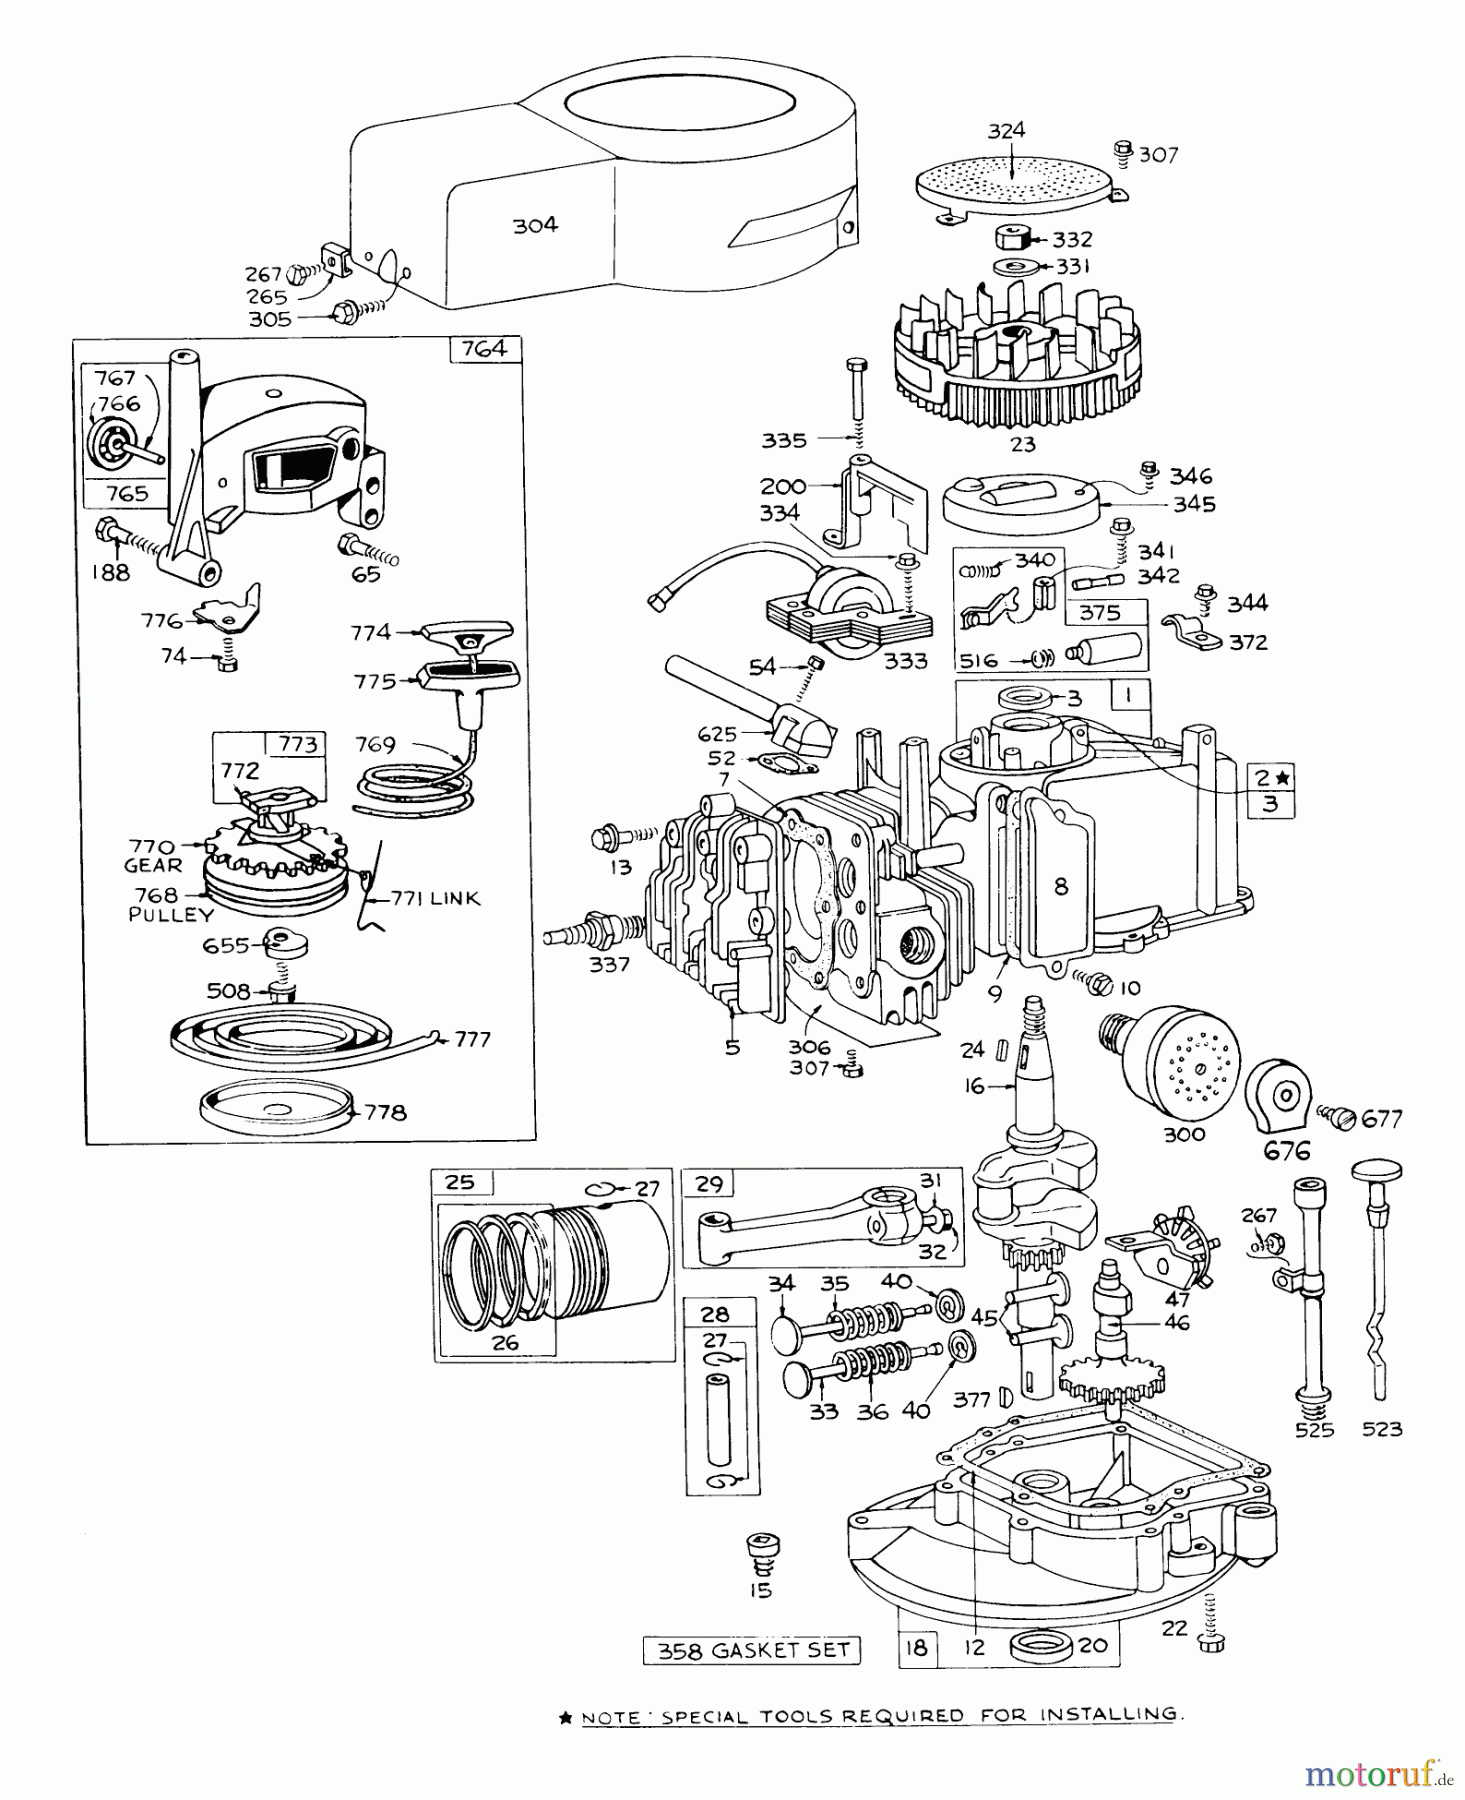  Toro Neu Mowers, Walk-Behind Seite 1 16173 - Toro Whirlwind Lawnmower, 1973 (3000001-3999999) ENGINE BRIGGS & STRATTON - MODEL 92908-1224-01 FOR 21